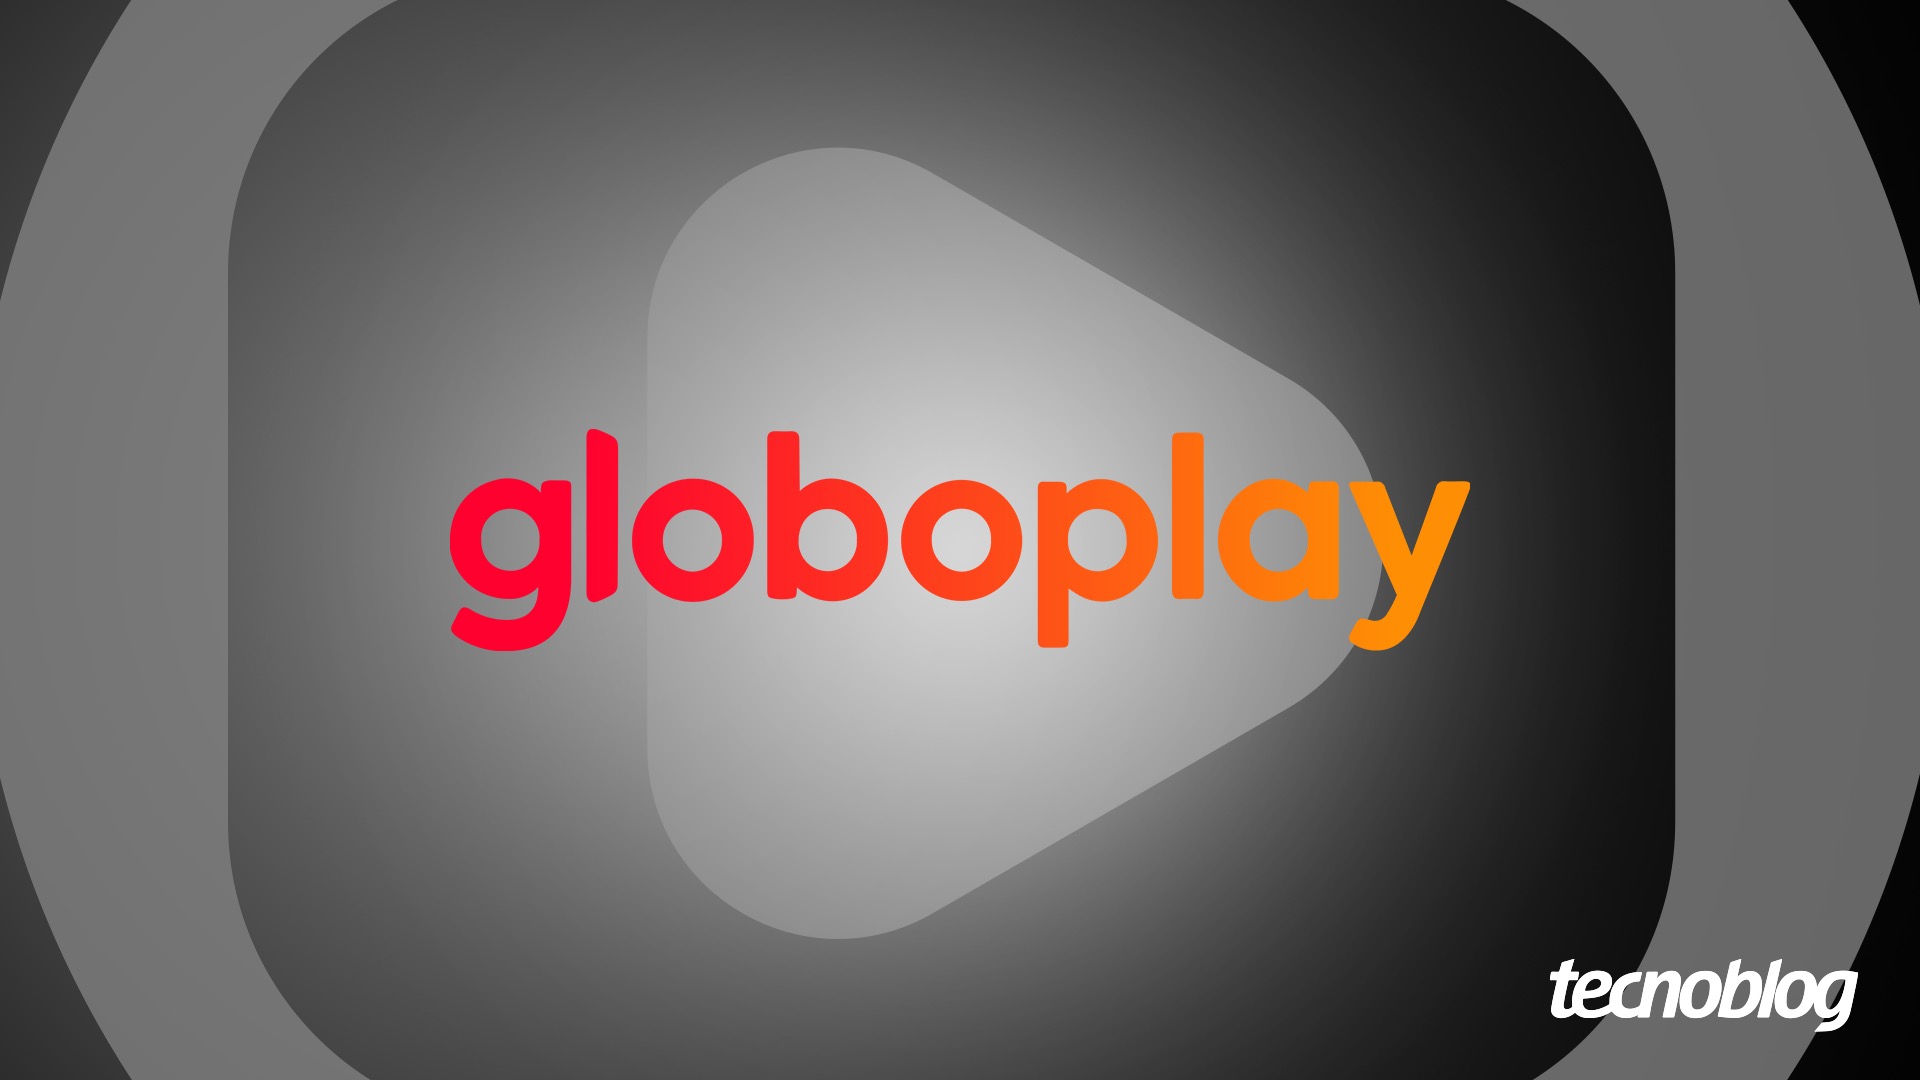 Não estou conseguindo realiza o pagamento do meu aplicativo globo play -  Comunidade Google Play